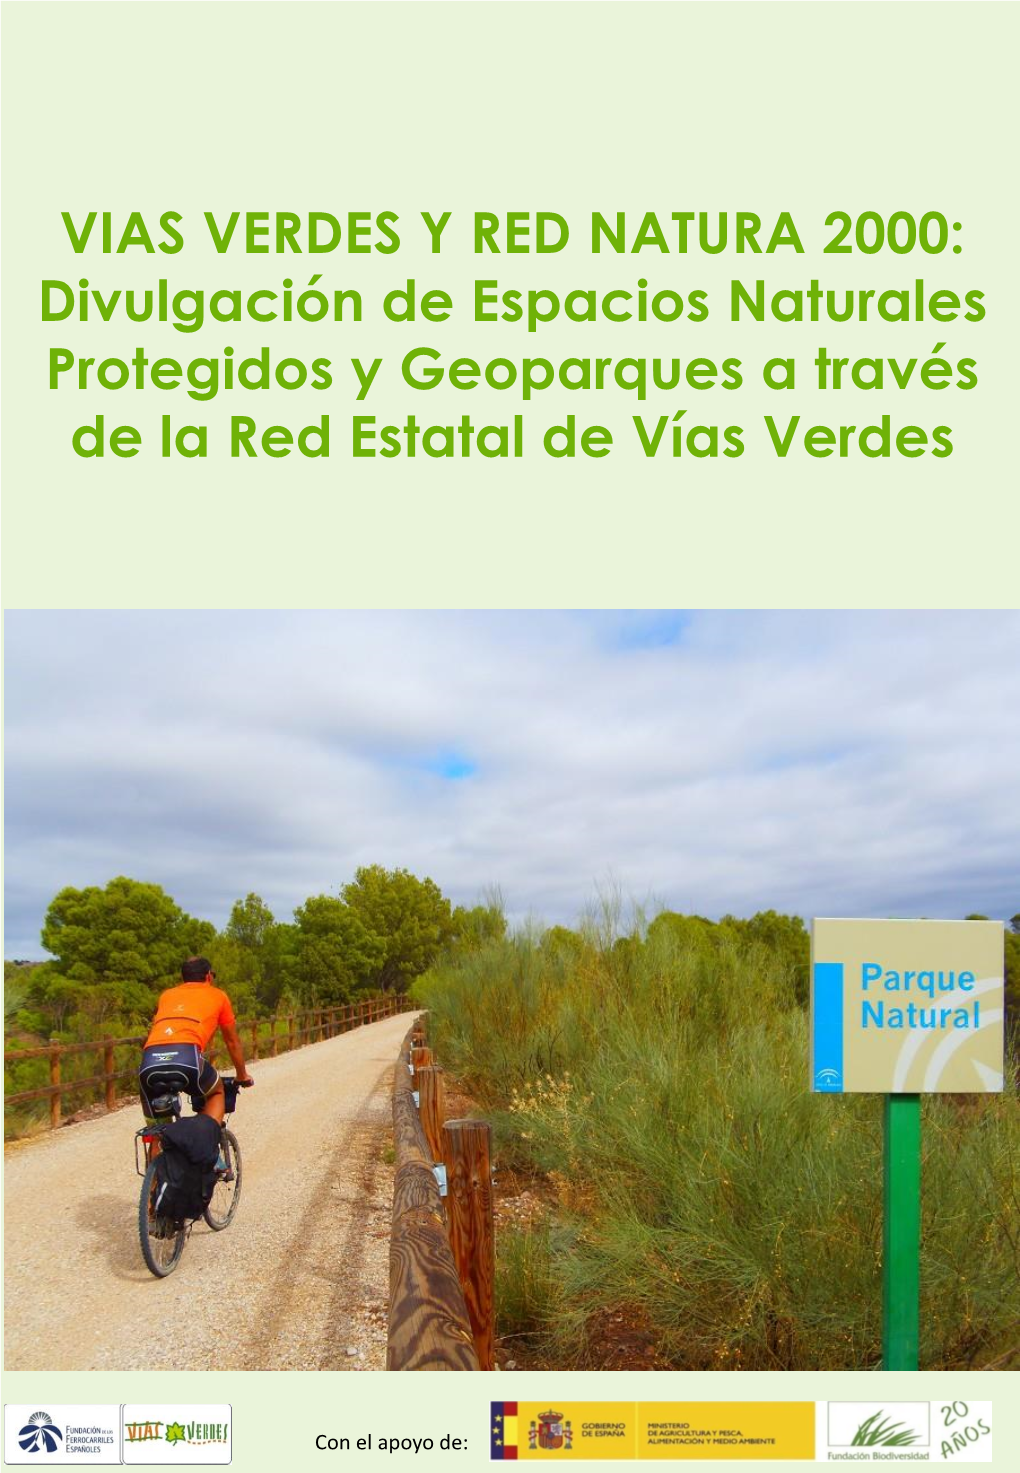 VIAS VERDES Y RED NATURA 2000: Divulgación De Espacios Naturales Protegidos Y Geoparques a Través De La Red Estatal De Vías Verdes